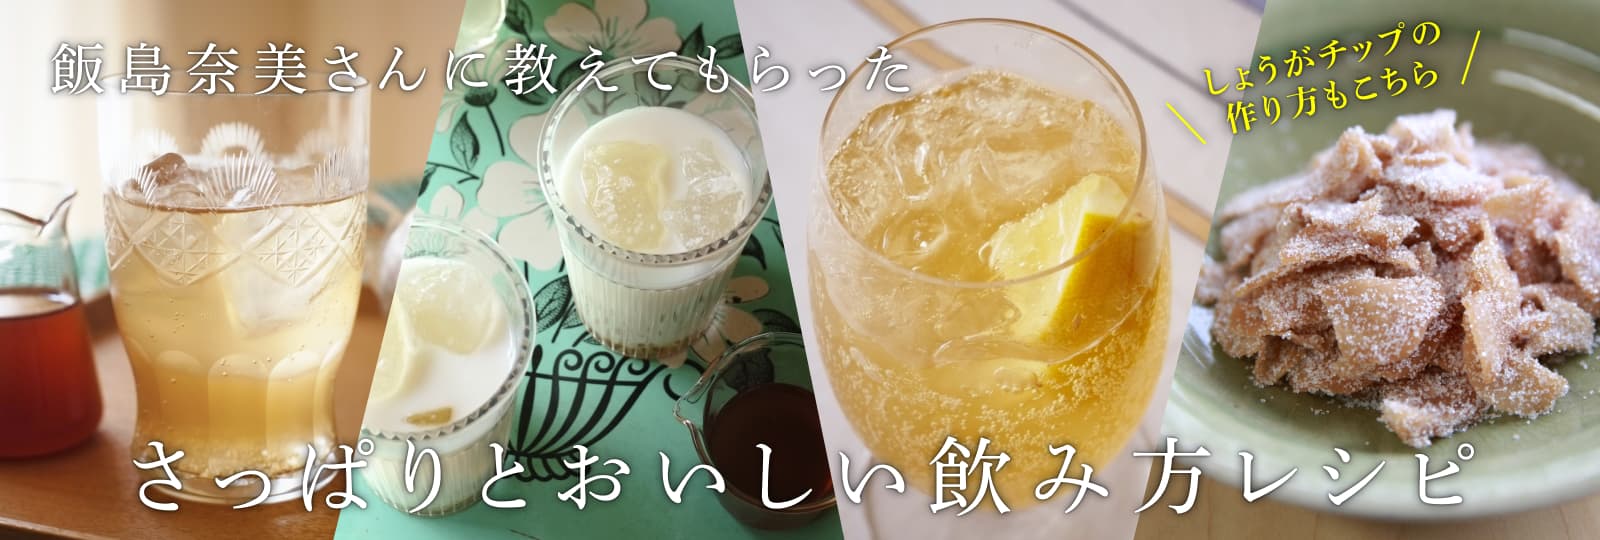 飯島奈美さんに教えてもらった初夏のおいしい飲み方レシピ「しょうがチップの　作り方もこちら」